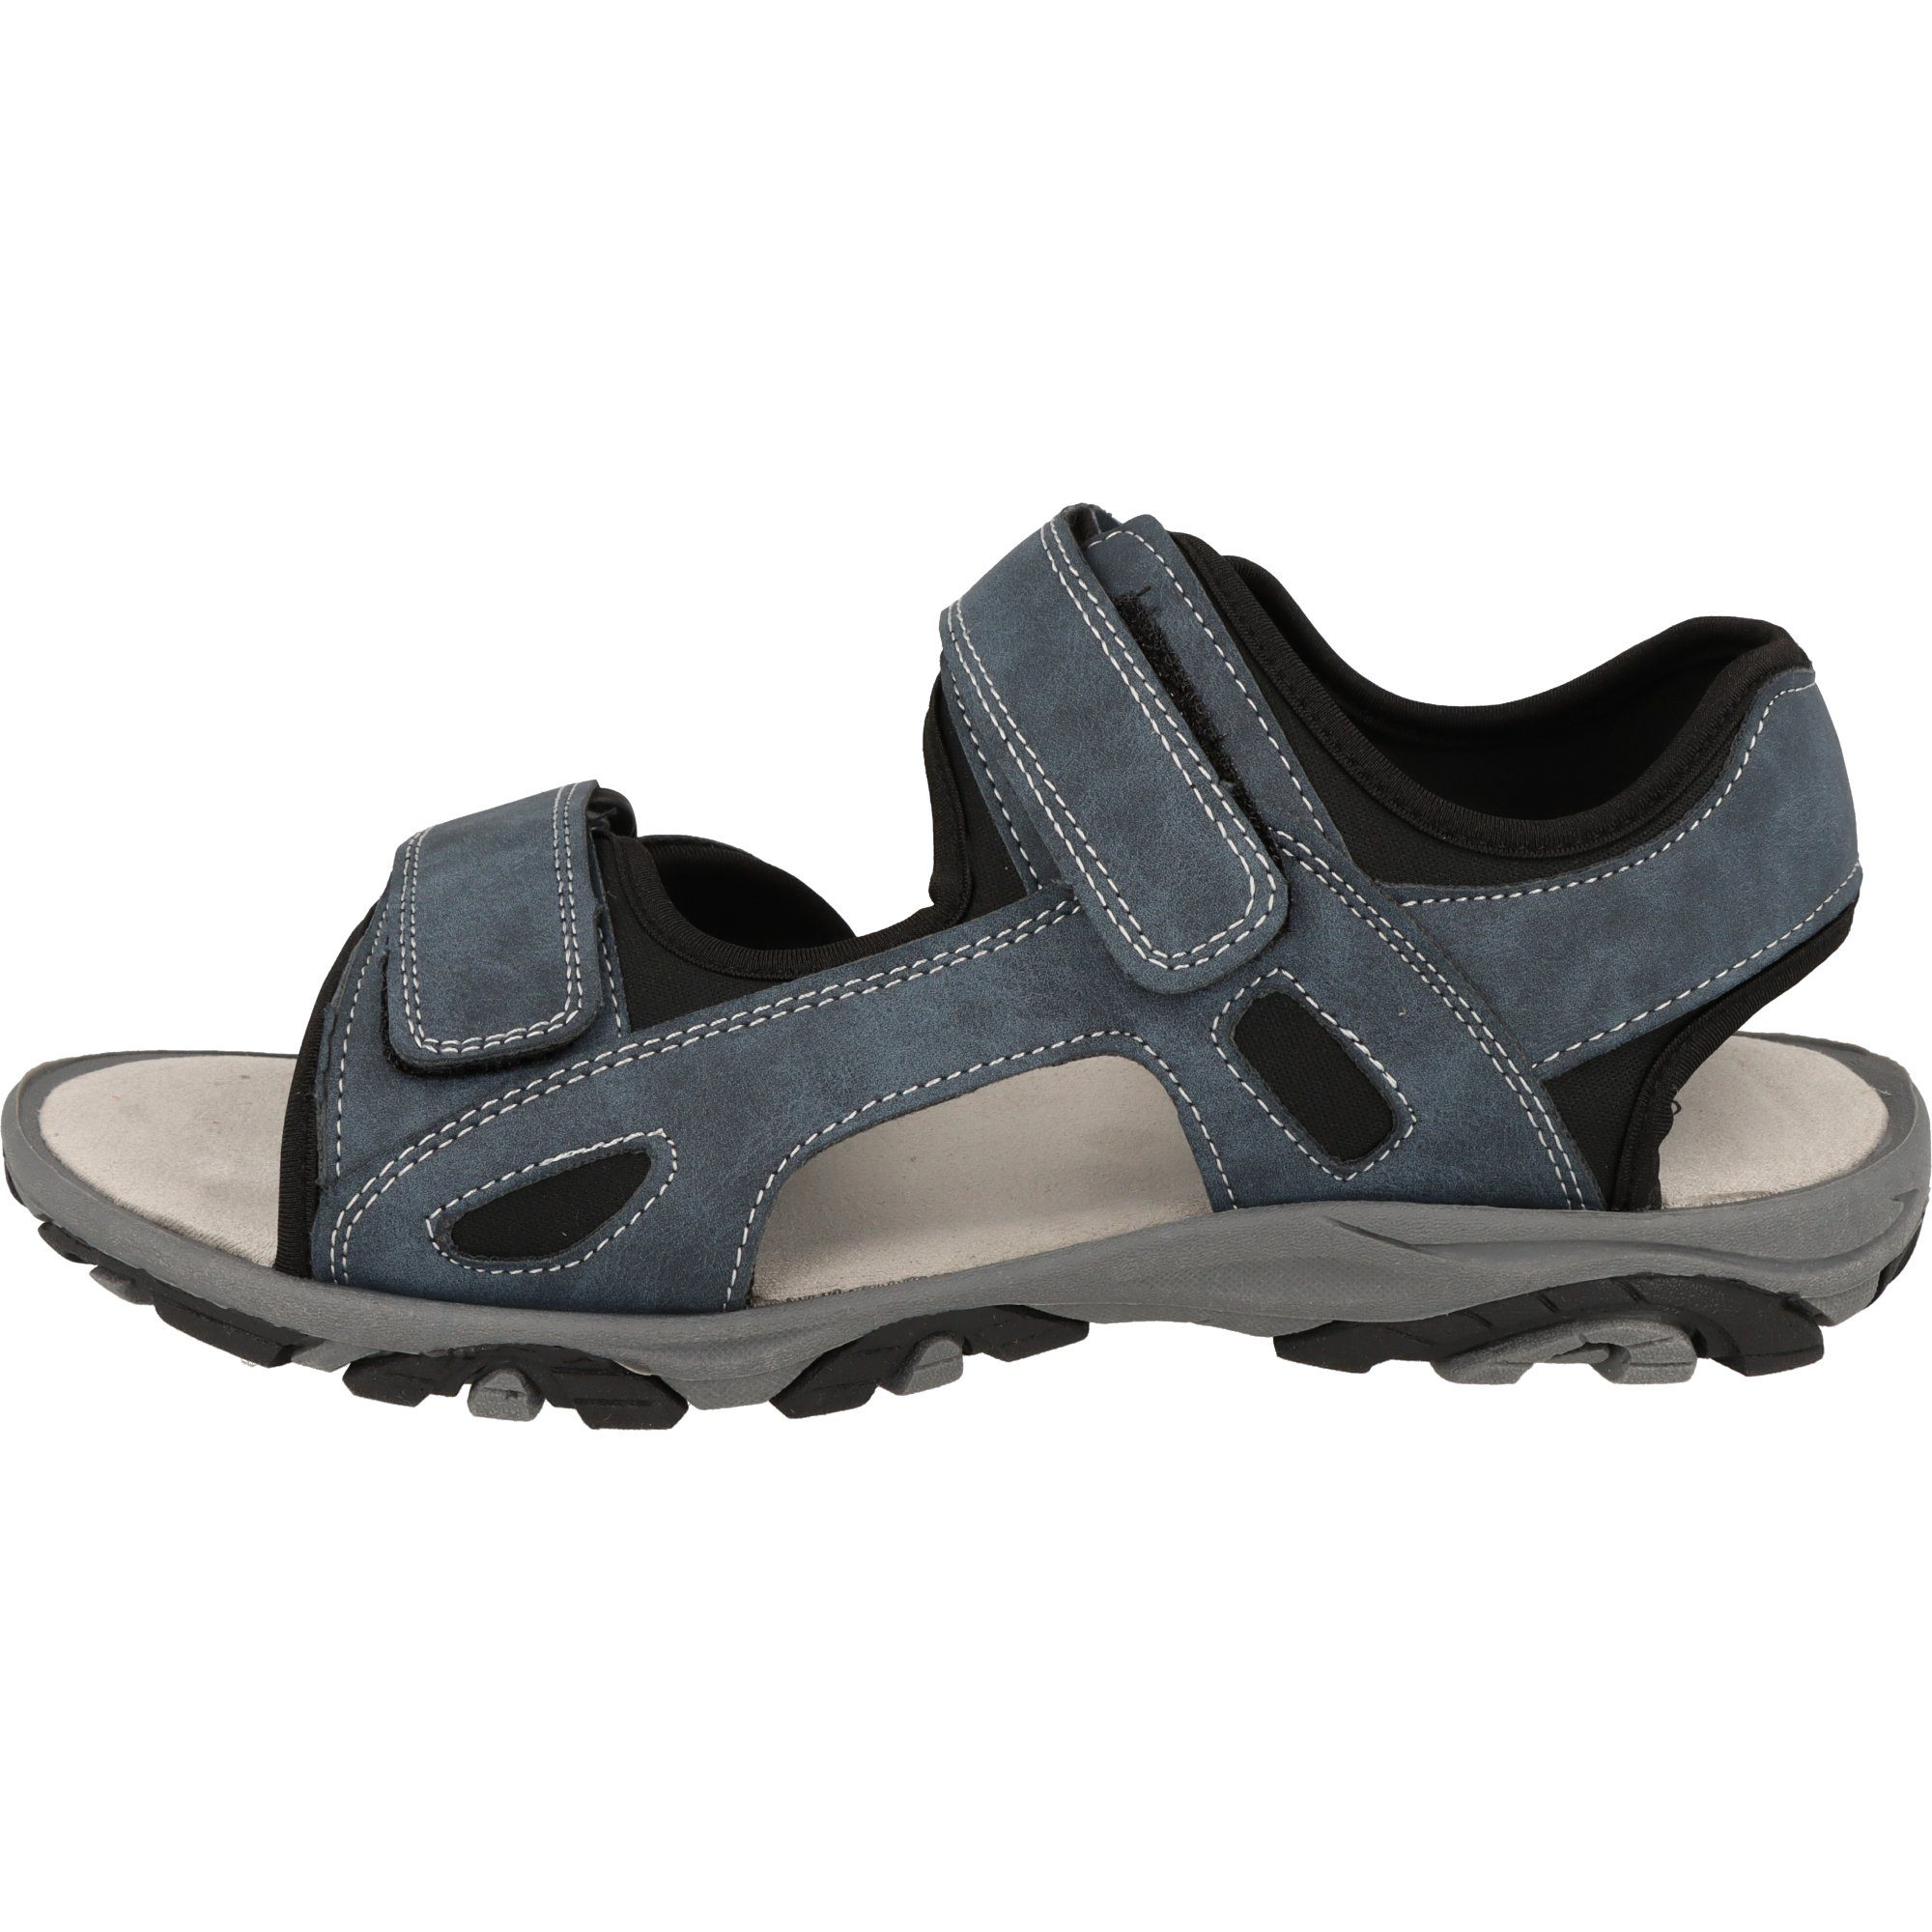 Canadian Herren Schuhe Trekking Sandalen 181-001 2-Fach Klettverschluss  Outdoorsandale